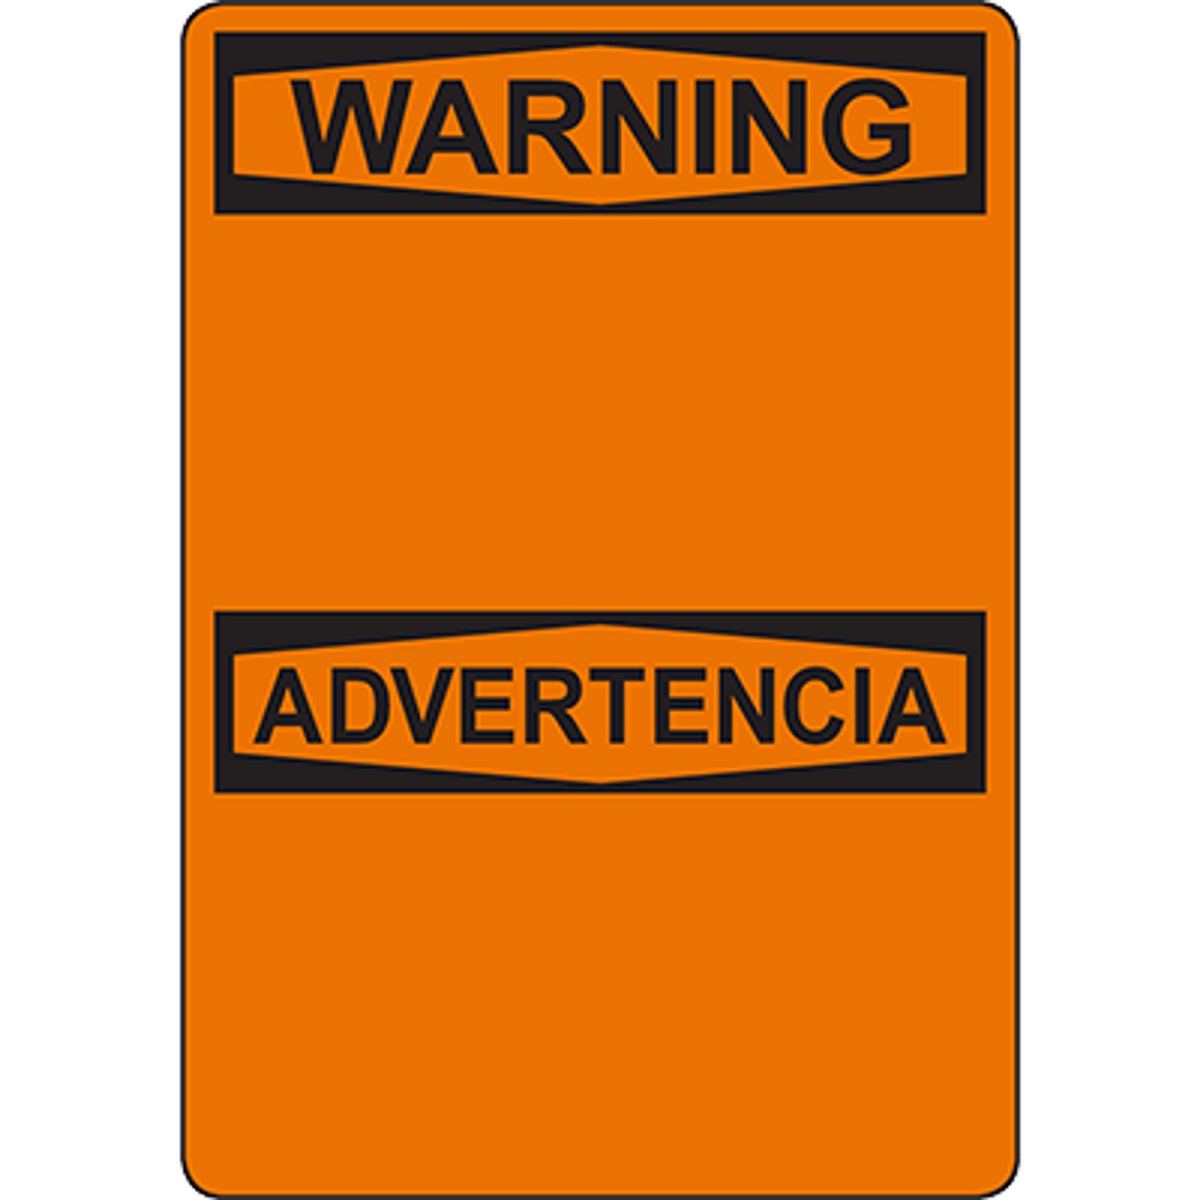 Warning - Advertencia Sign